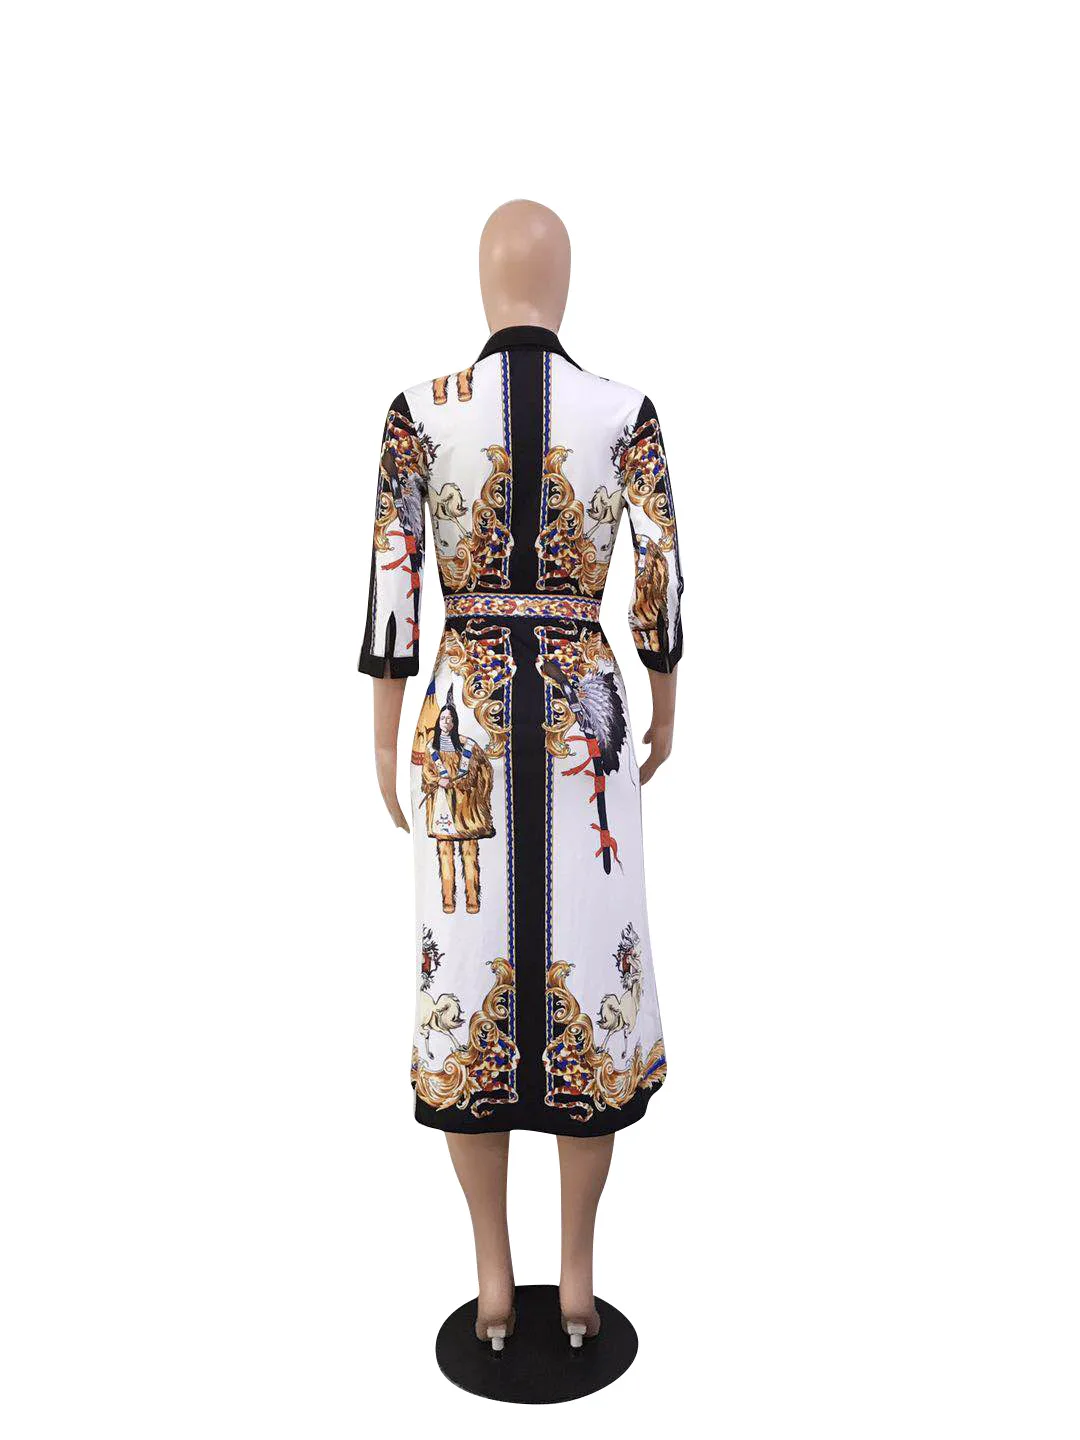 Африканские платья для женщин халат Африканский стиль африканская женская одежда Дашики модный принт ткань платье африканская одежда